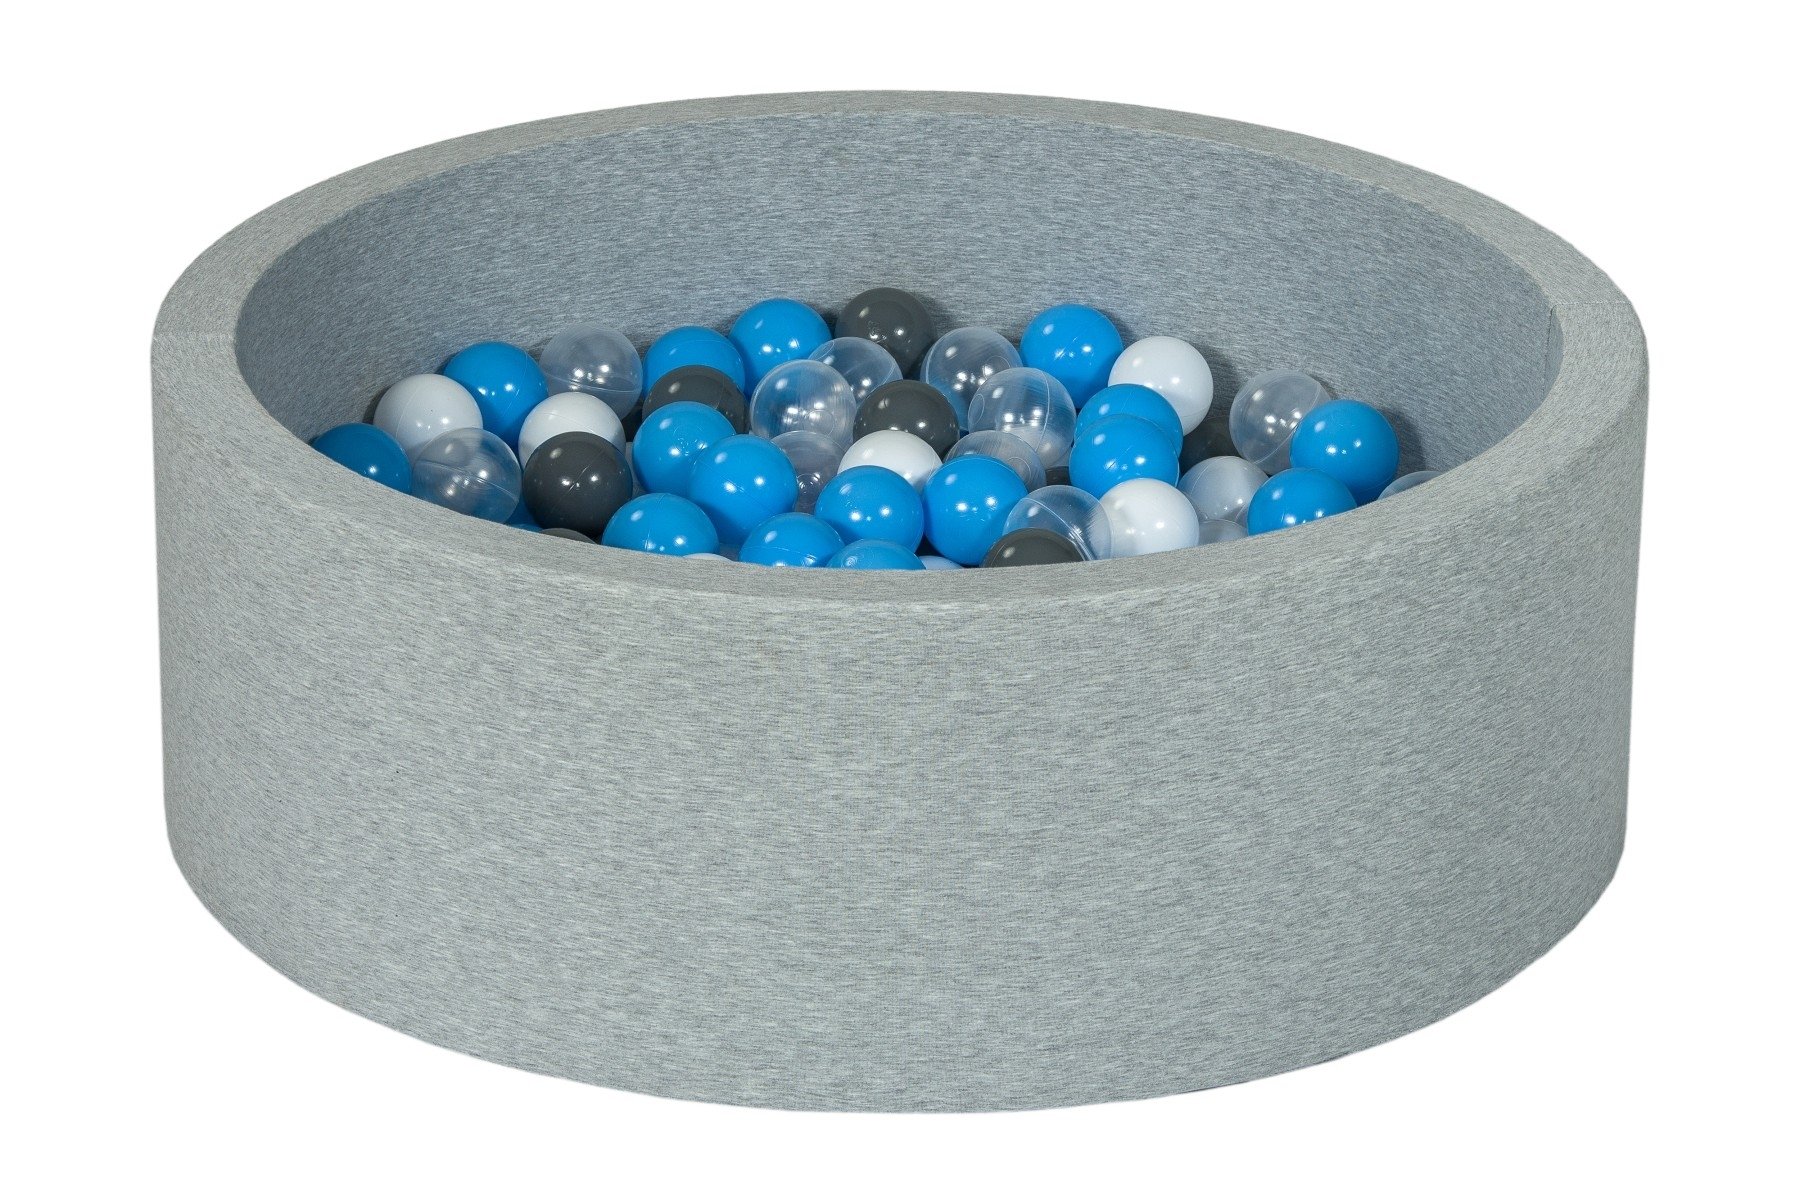 Piscine à balles pour bébé avec 200 balles 90x30cm grise balle turquoise